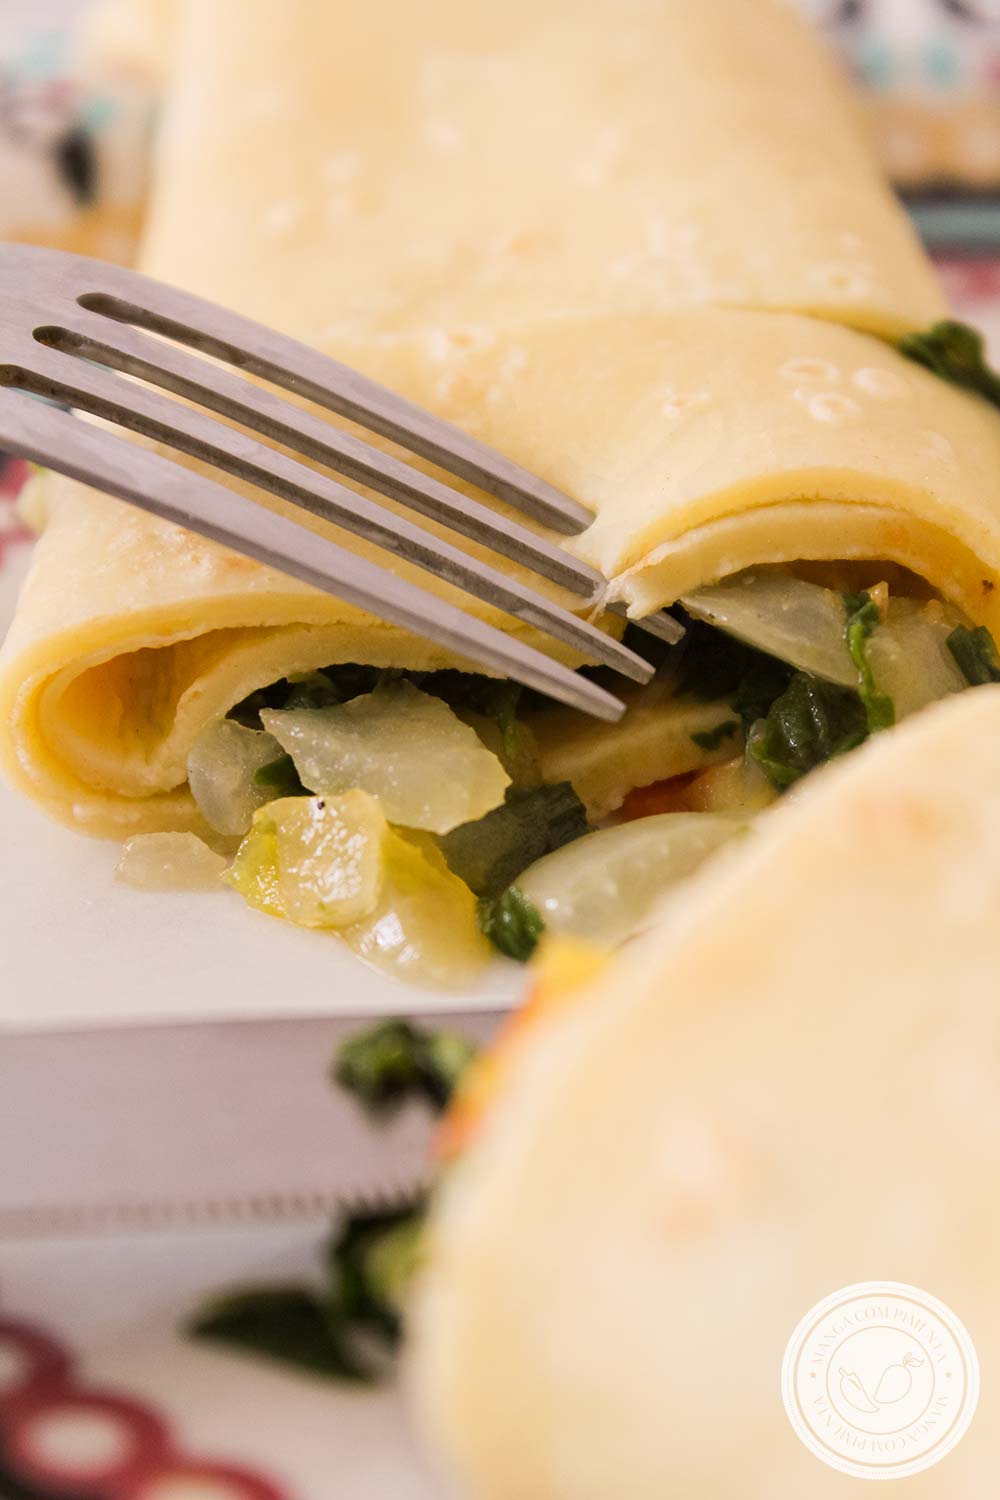 Panqueca Recheada com Espinafre e Tomate - Almoço Nutritivo para semana ou levar na marmita!